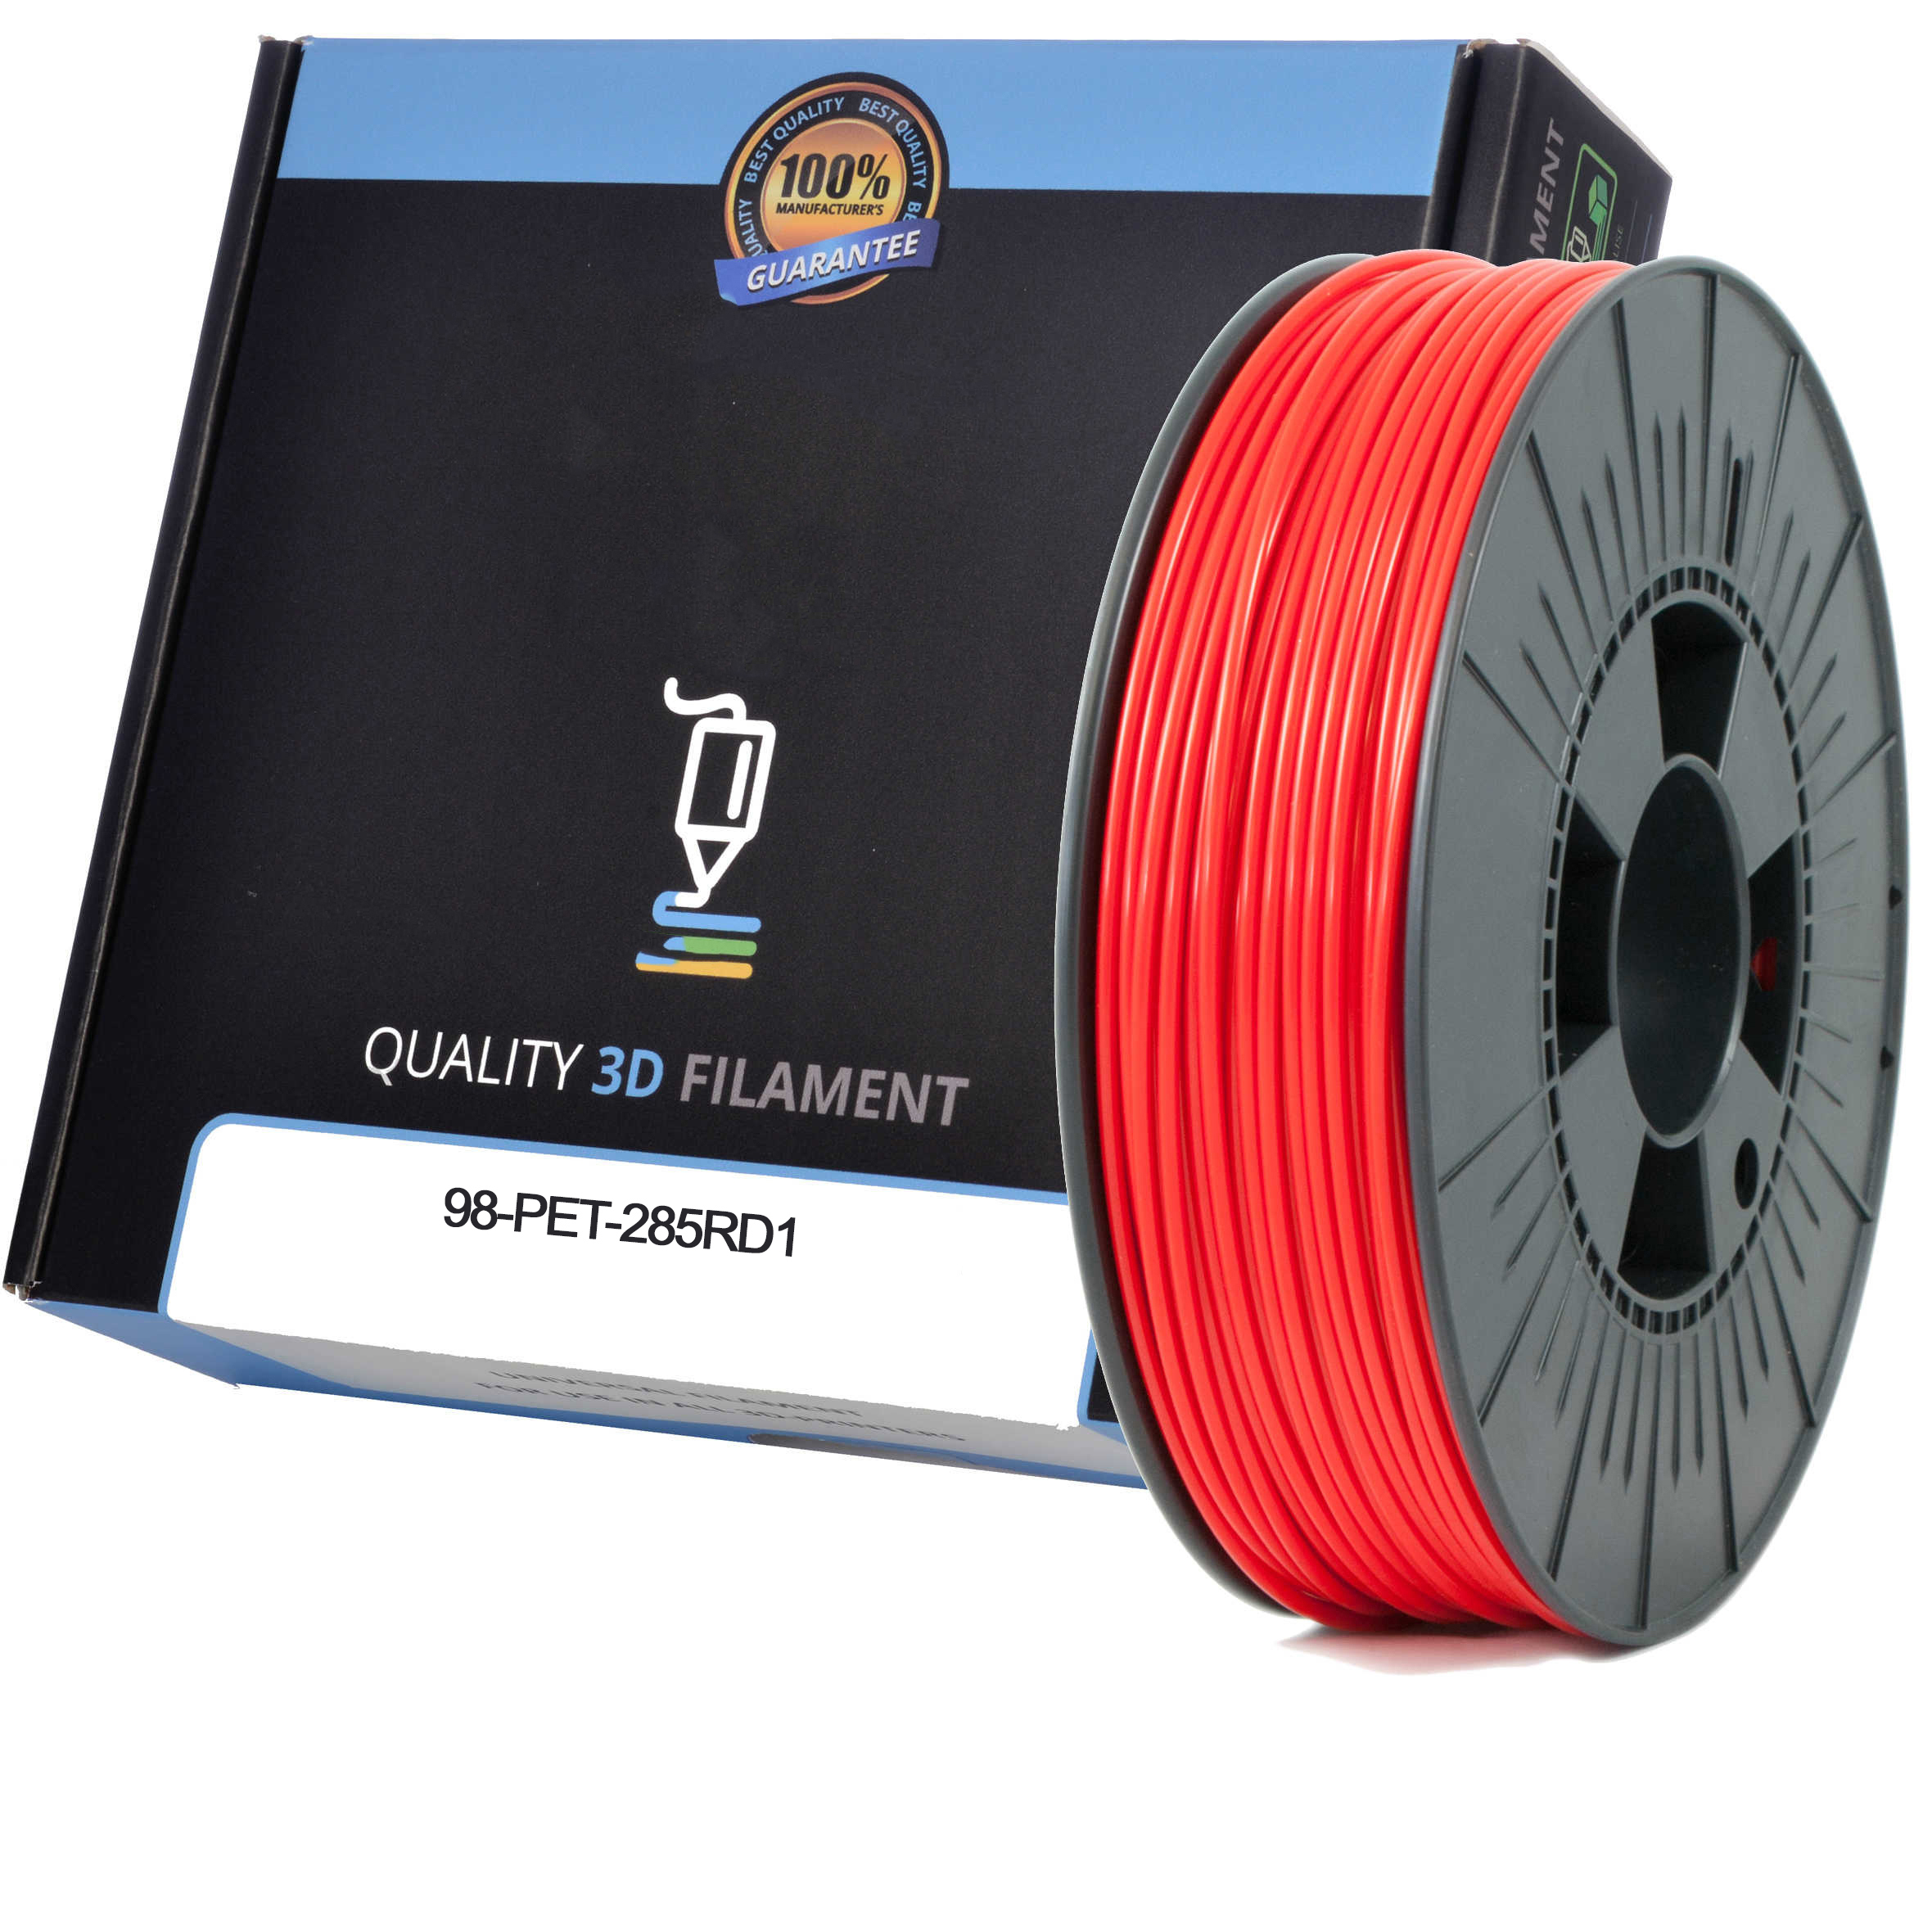 Premium Compatible PETG 2.85mm Red 0.5kg 3D Filament (98-PET-285RD1)